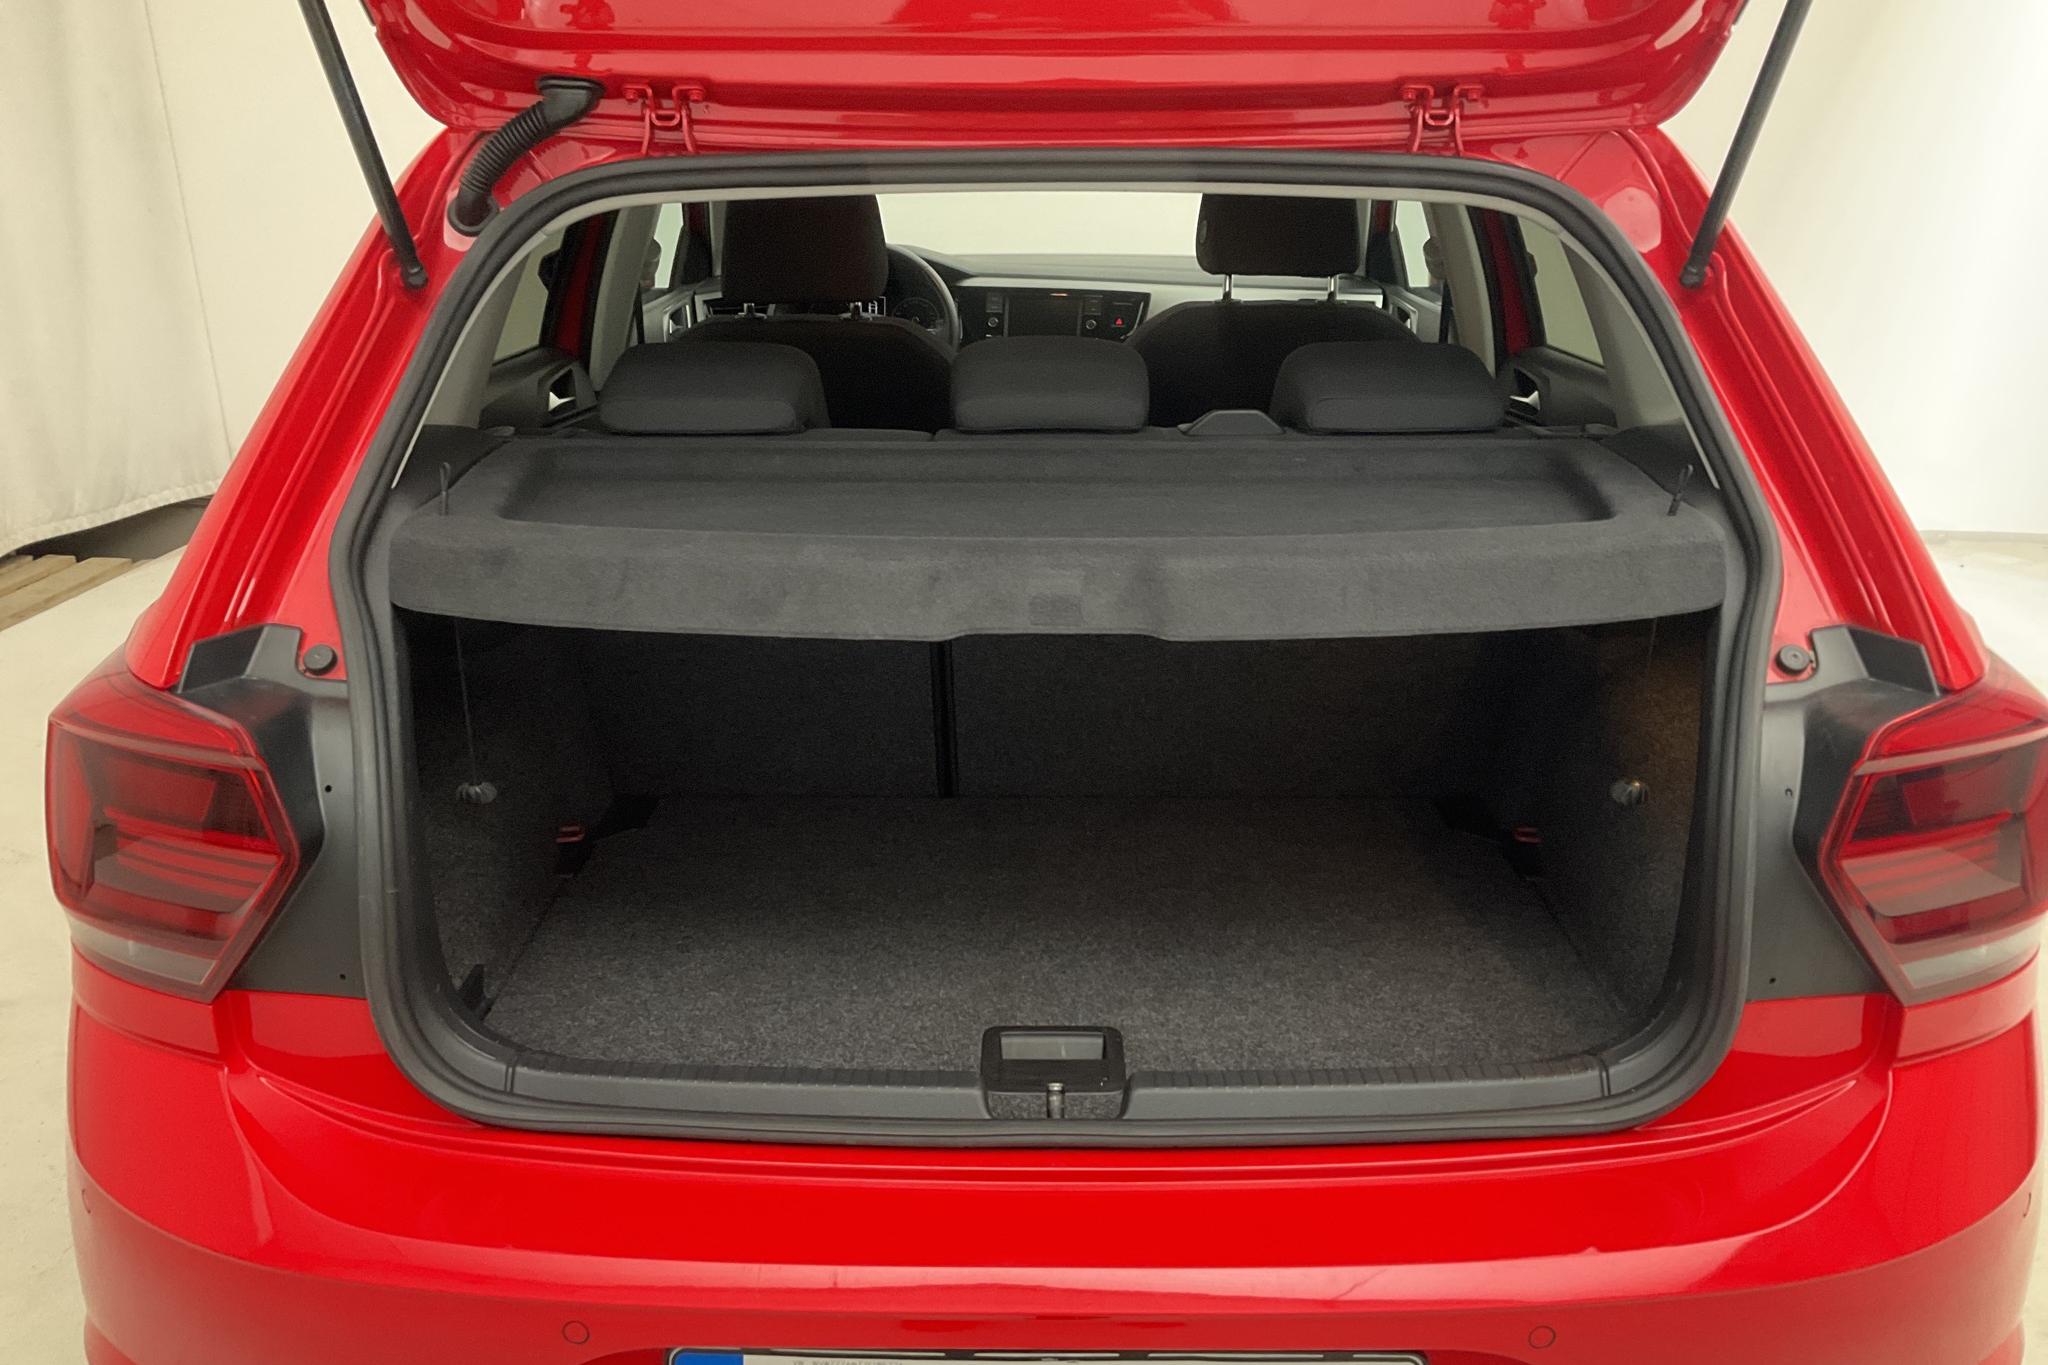 VW Polo 1.0 TSI 5dr (95hk) - 66 650 km - Manual - red - 2018